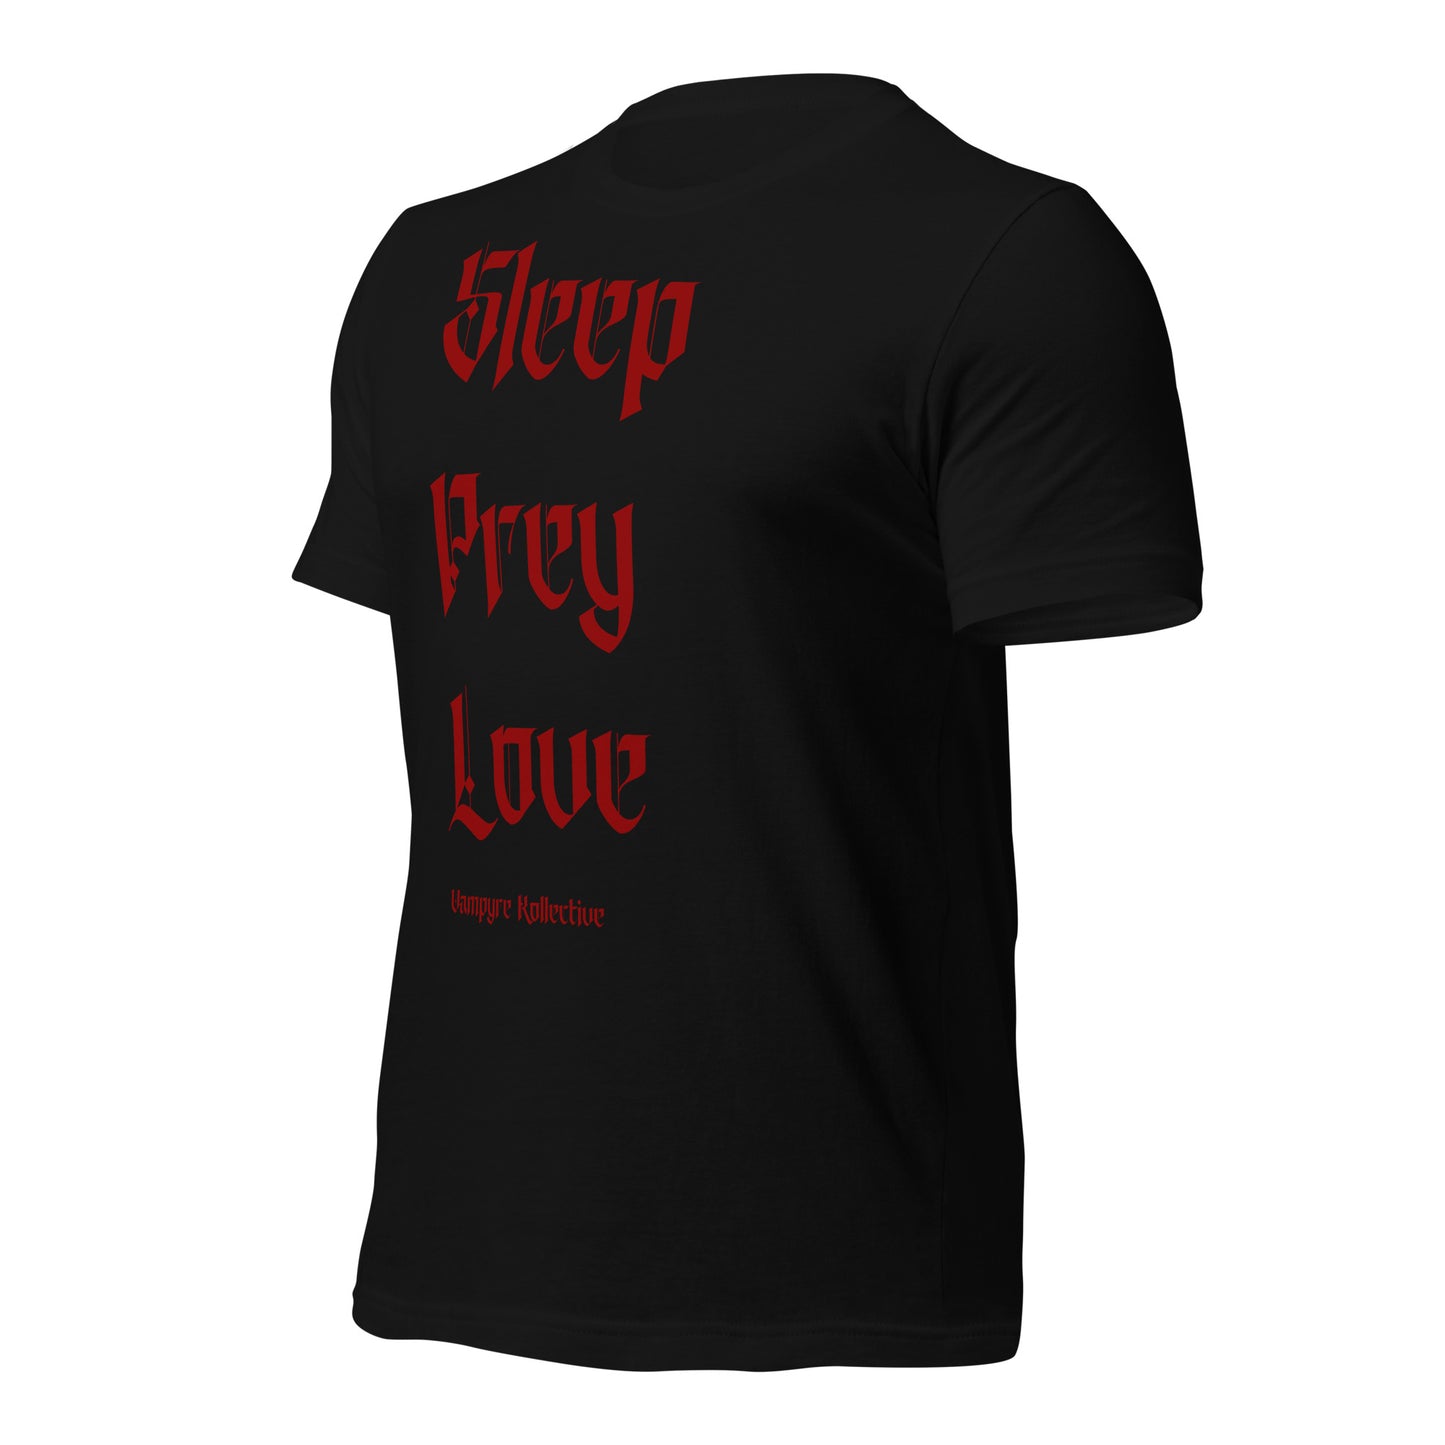 VK Sleep Prey Love